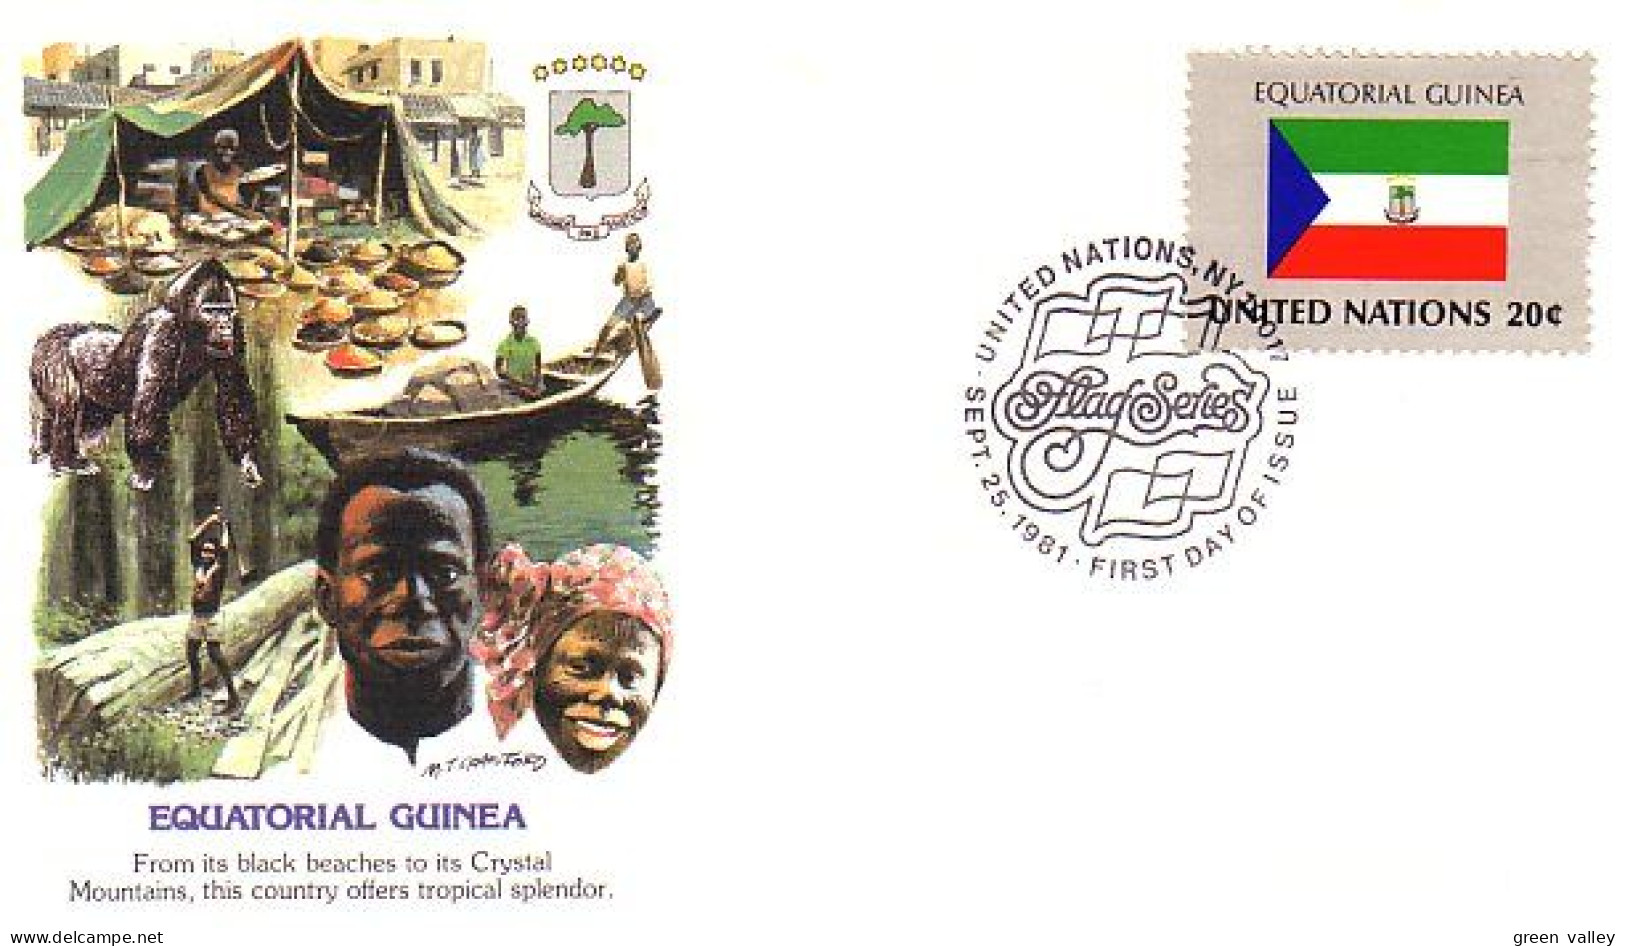 Equatorial Guinea Flag Drapeau Gorillas FDC Cover ( A90 173) - Buste